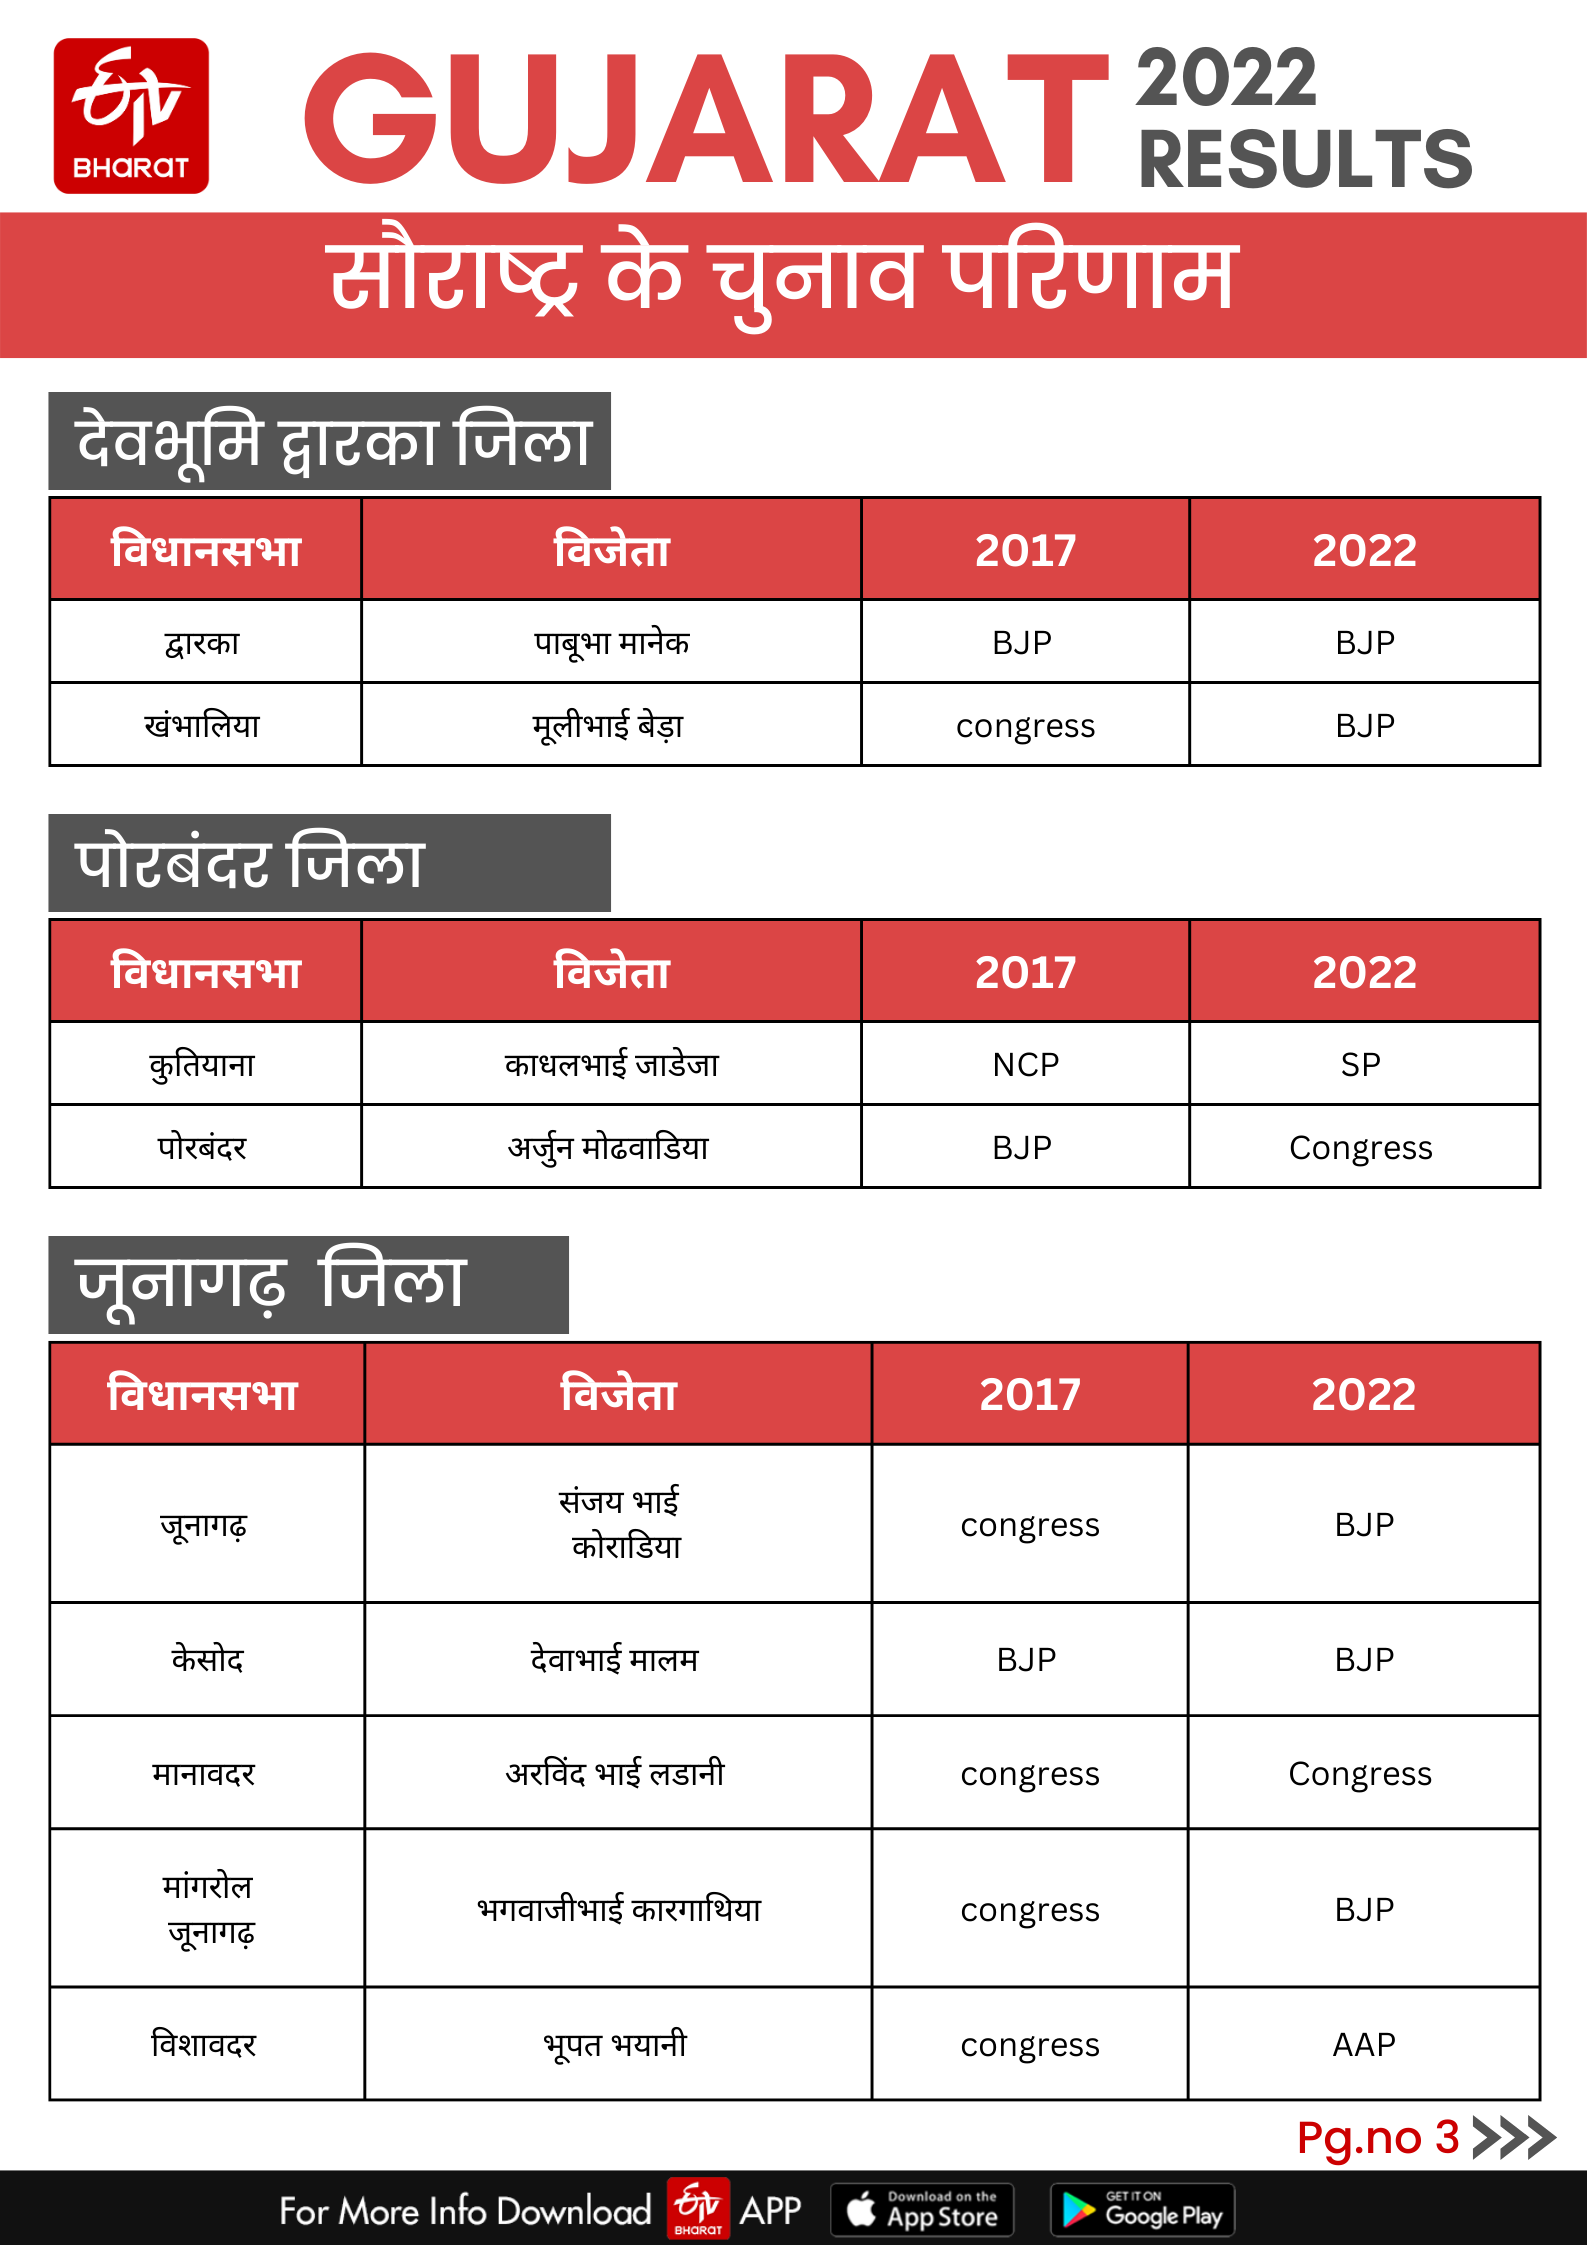 राजकोट जिले की 8 और जामनगर की चार सीटों पर बीजेपी जीती.